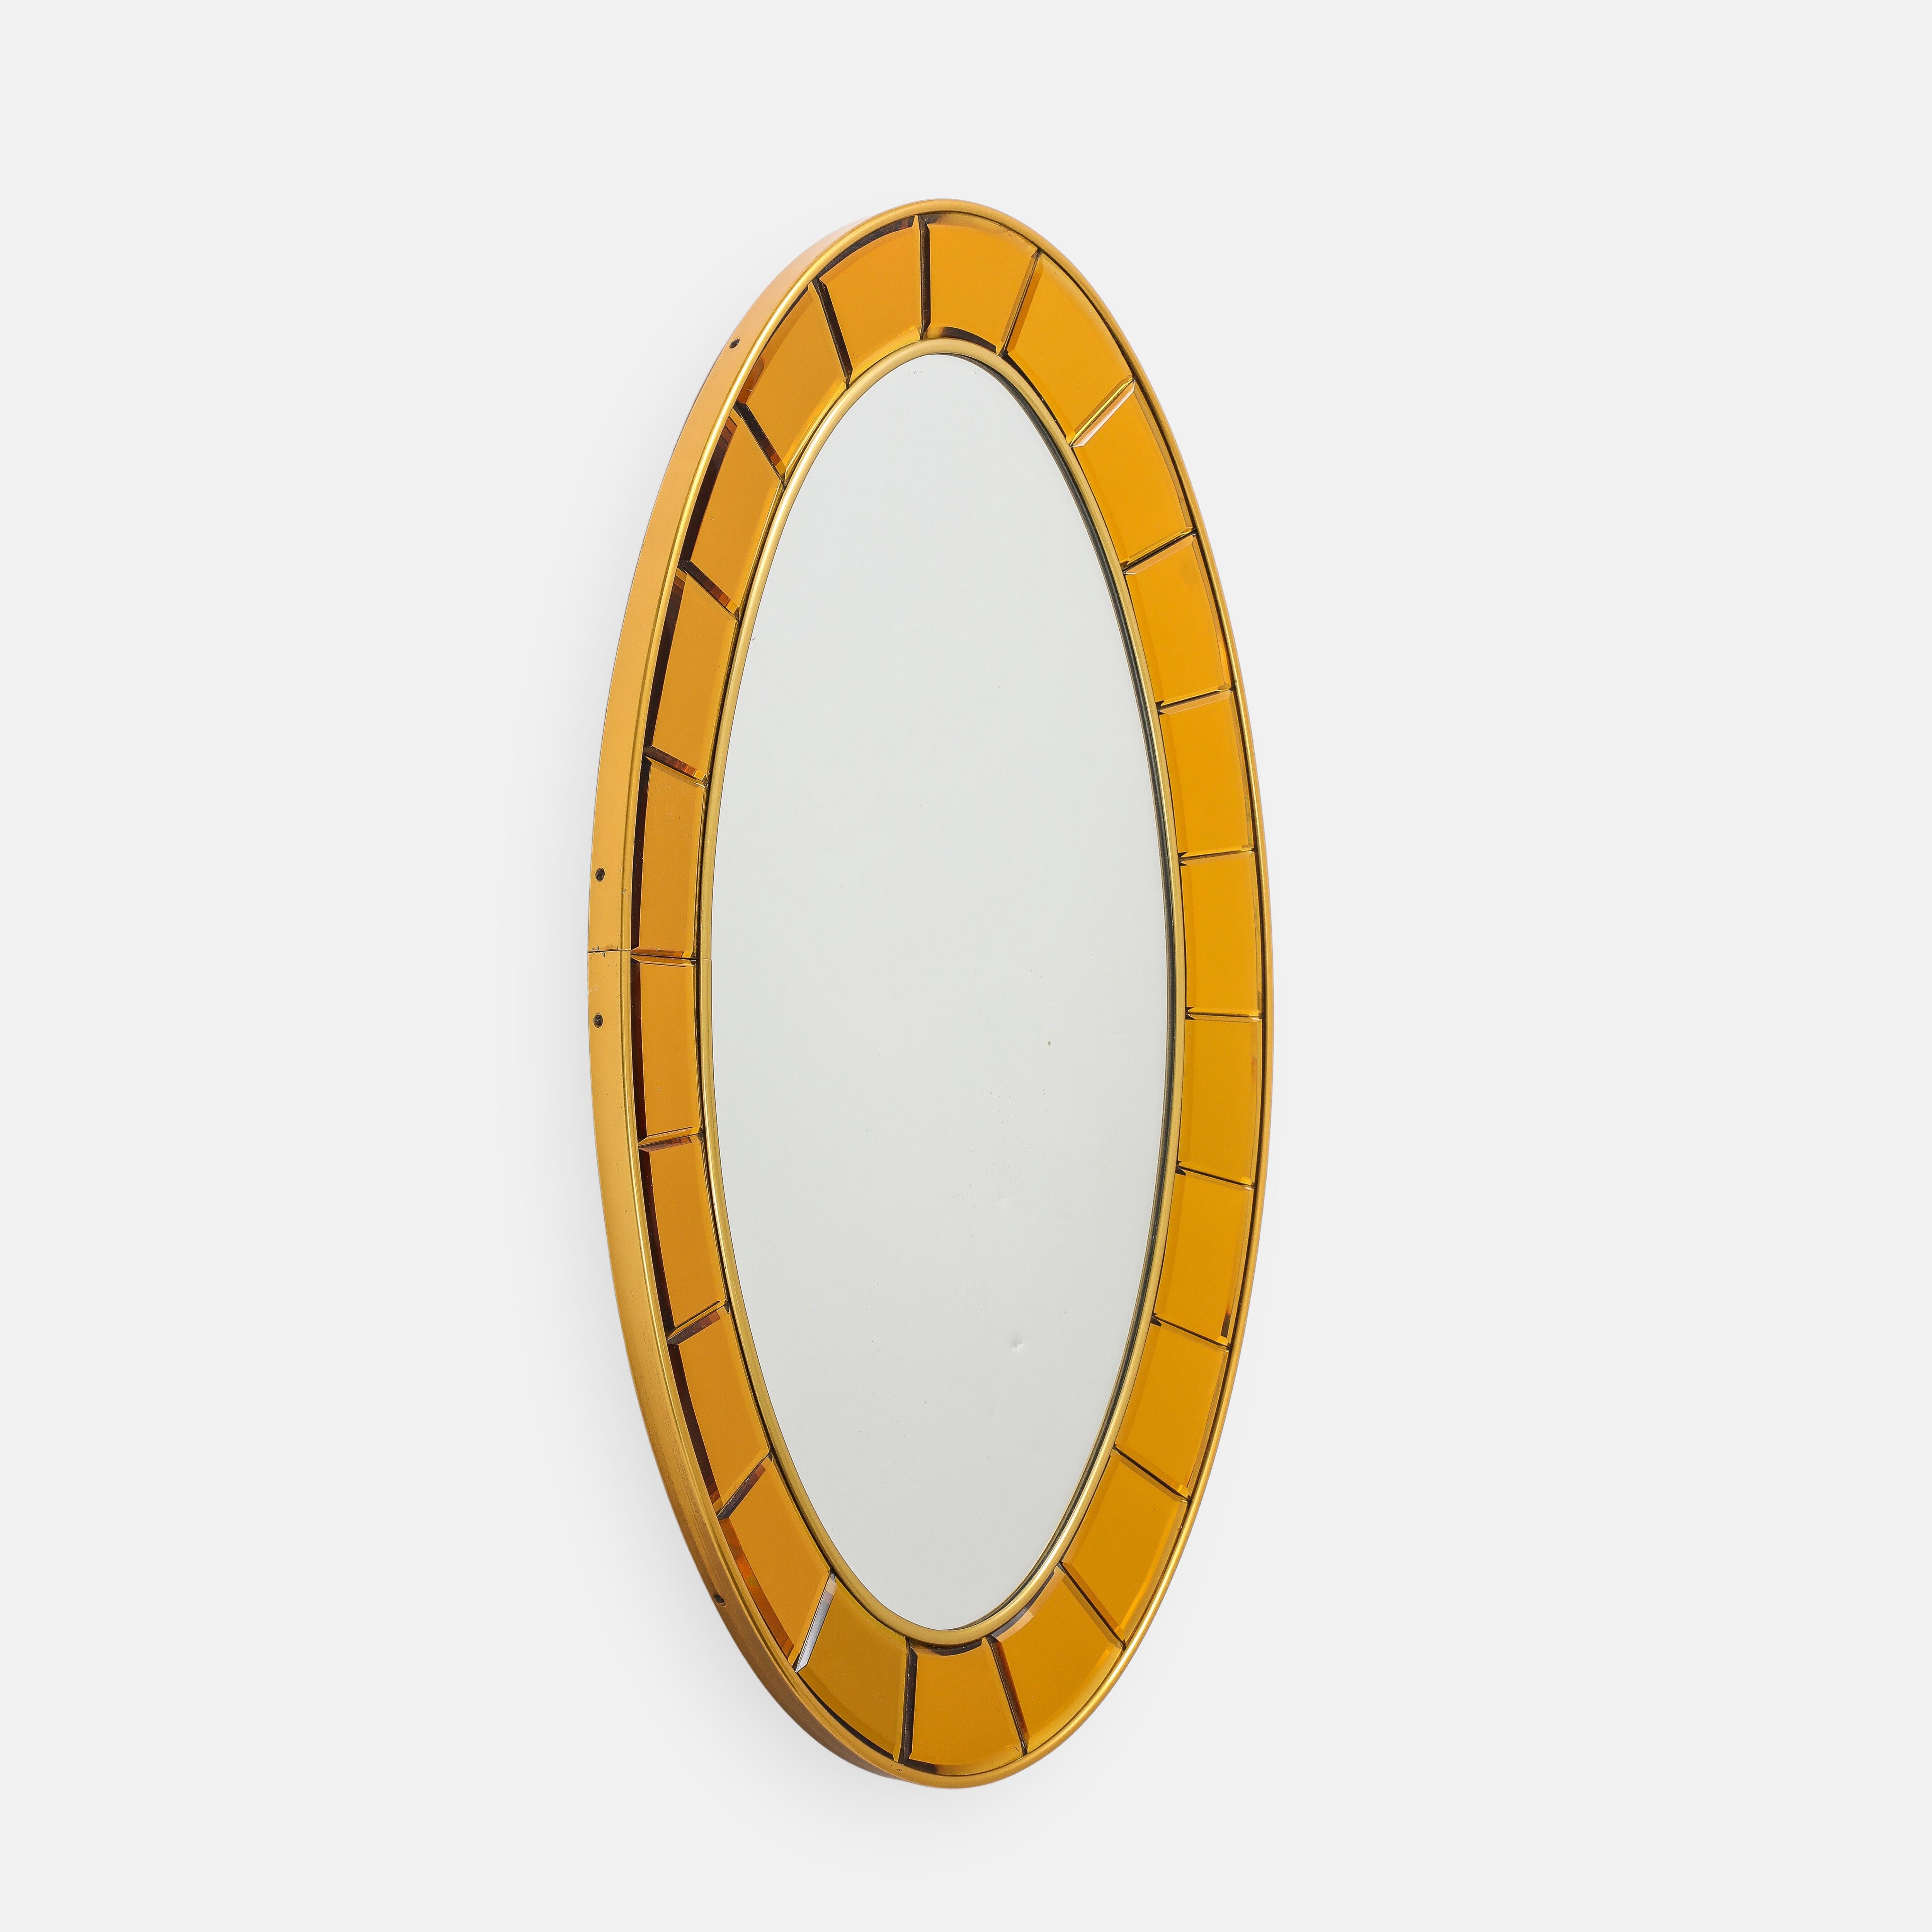 Miroir ovale original Cristal Art modèle 2727 avec des pièces en cristal taillées à la main et biseautées, encadrées par des bordures en laiton doré et un verre miroir sur un support en bois. Ce superbe miroir est fabriqué à la main avec des pièces